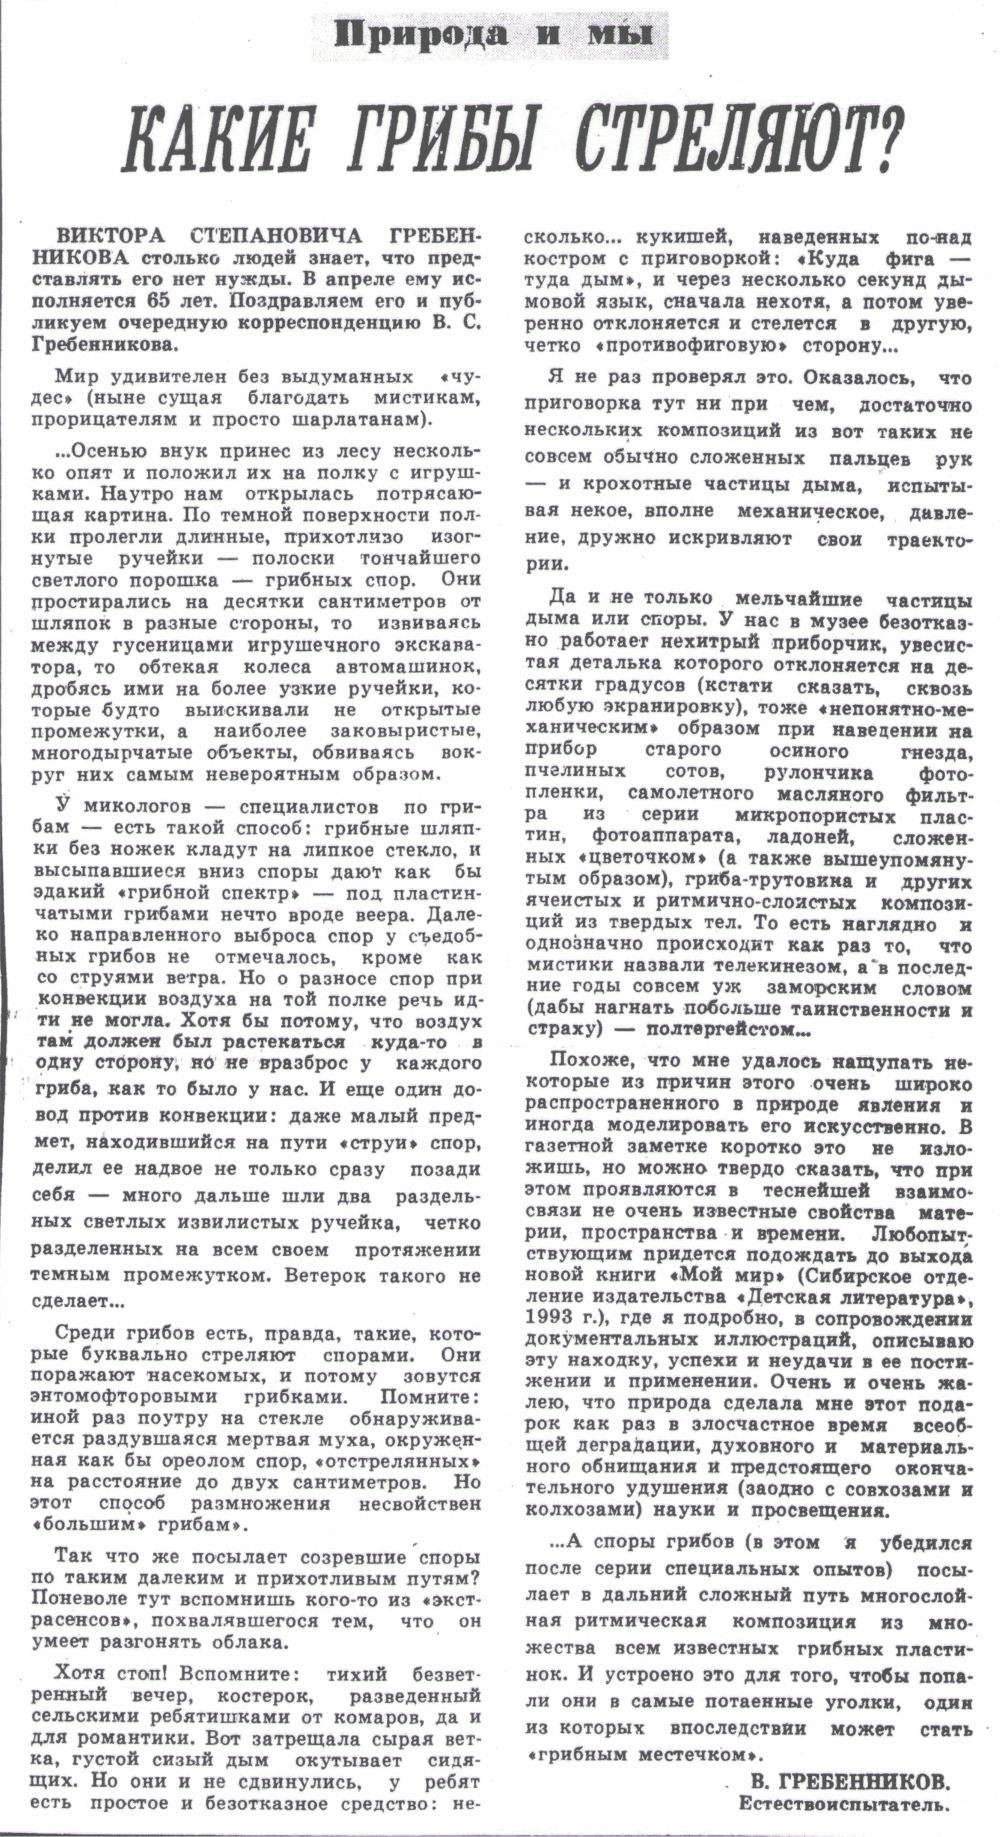 Какие грибы стреляют. В.С. Гребенников. Советская Сибирь, 22.04.1992.